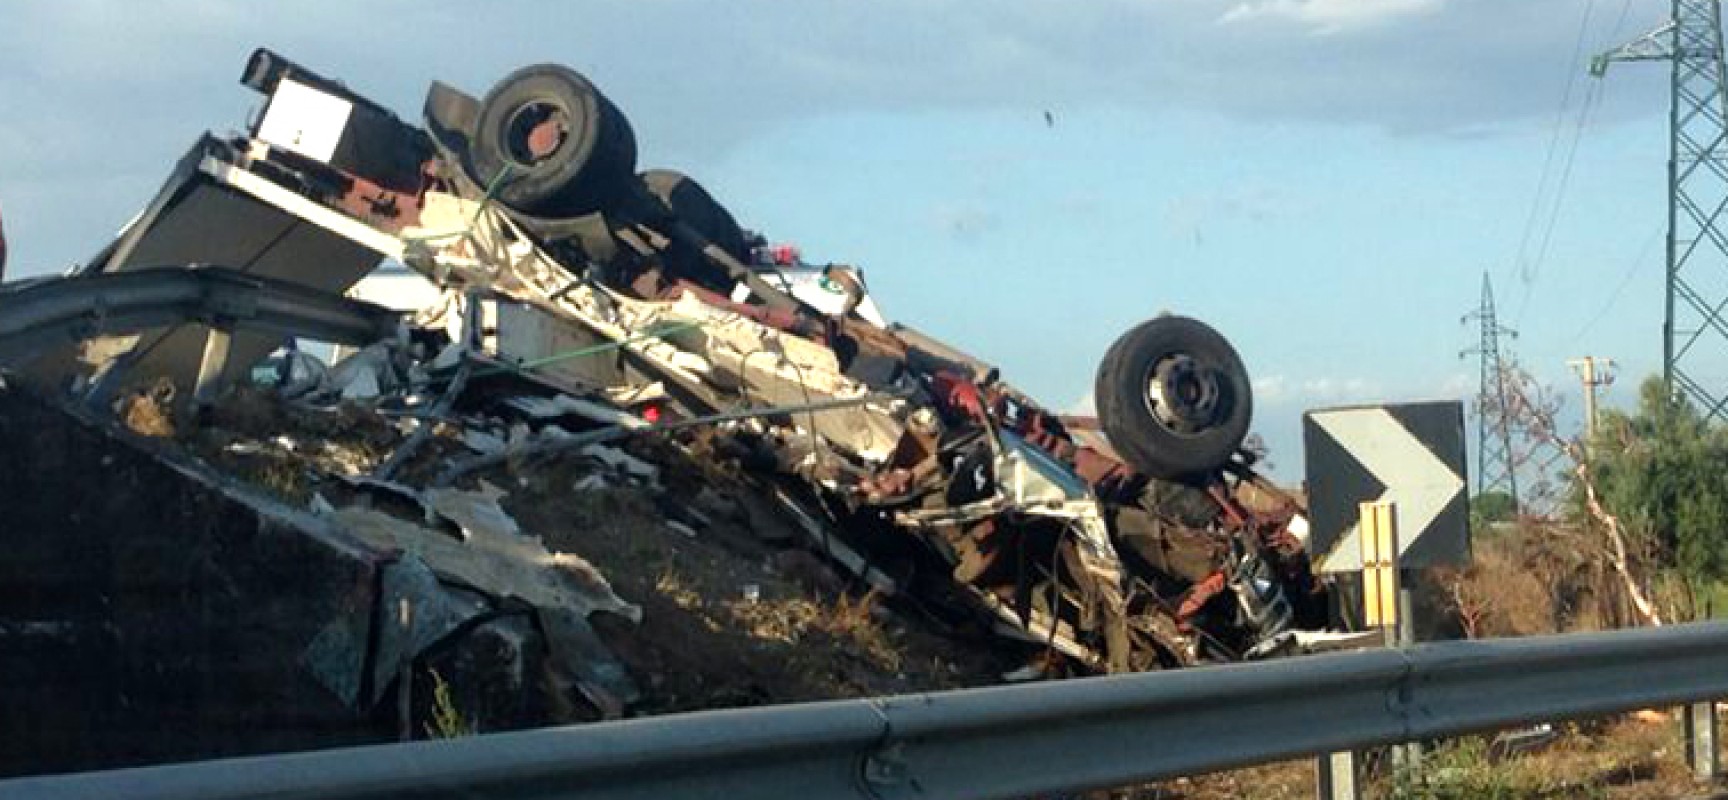 Morti due autotrasportatori biscegliesi in un grave incidente stradale vicino Taranto